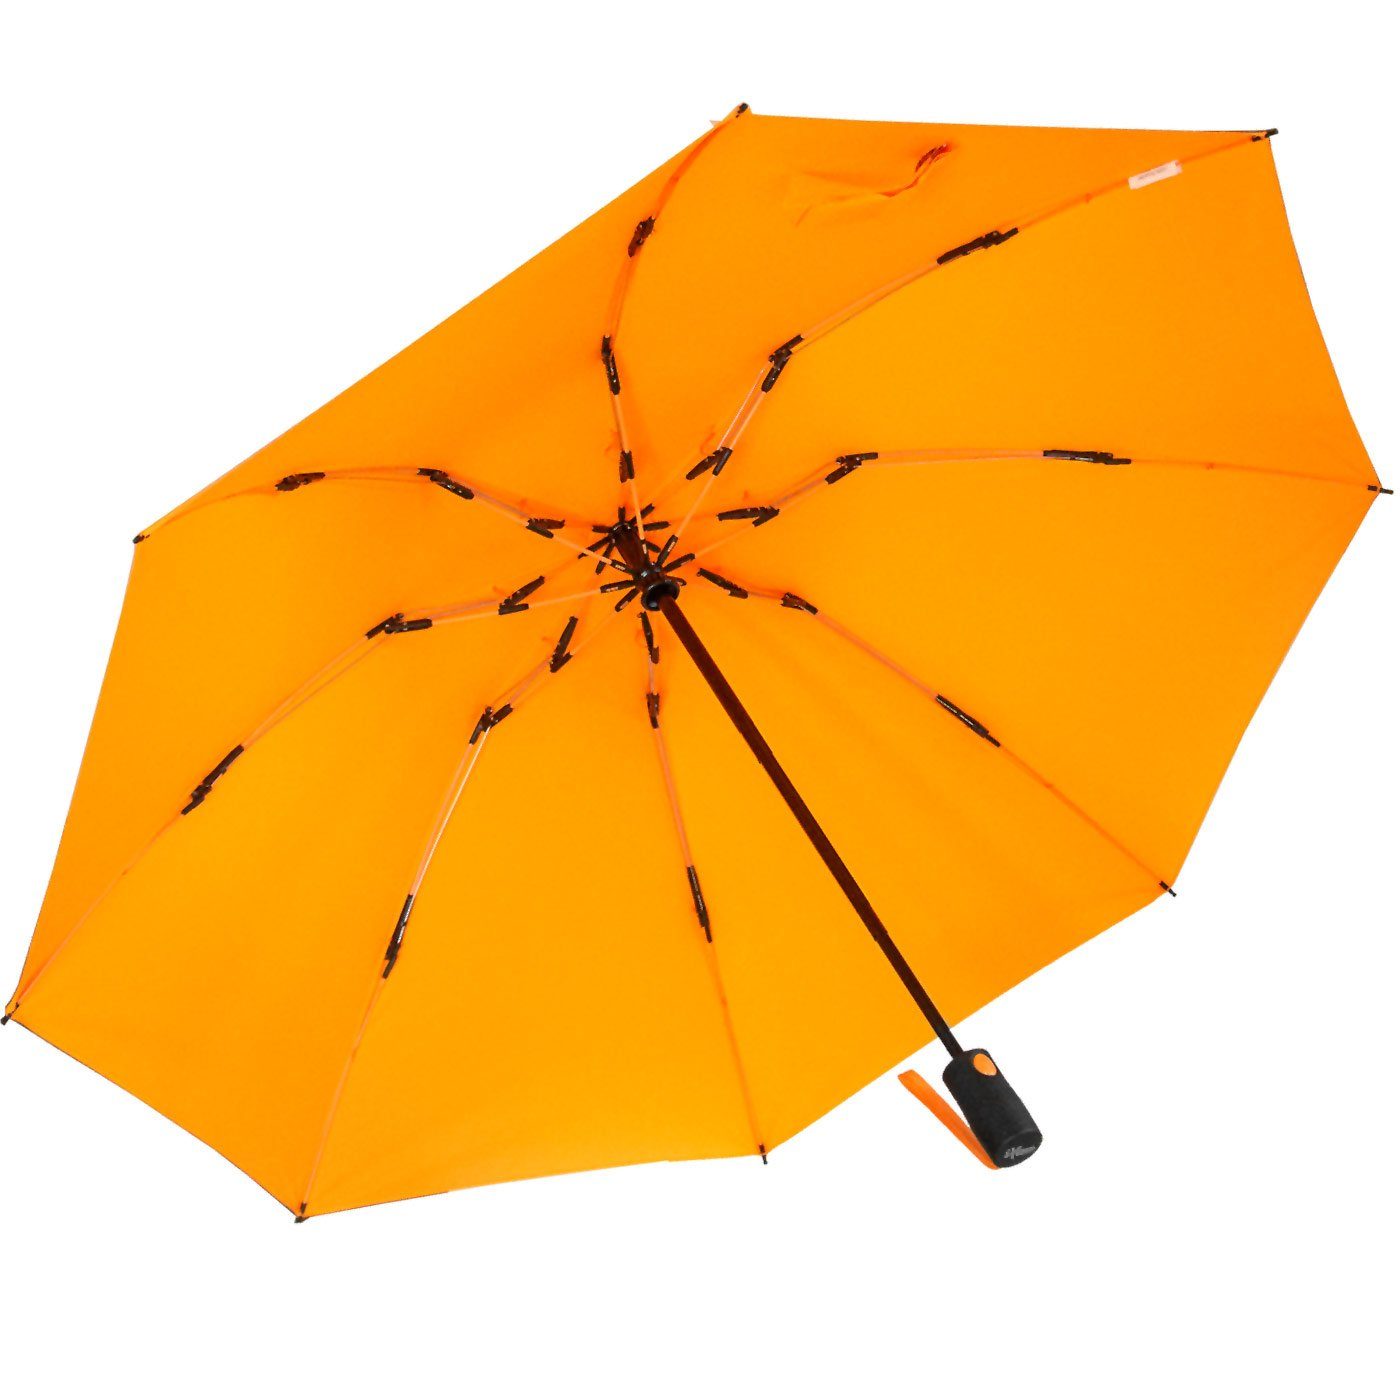 stabilen Speichen Taschenregenschirm iX-brella mit neon-orange bunten öffnender Fiberglas-Automatiksch, umgekehrt Reverse